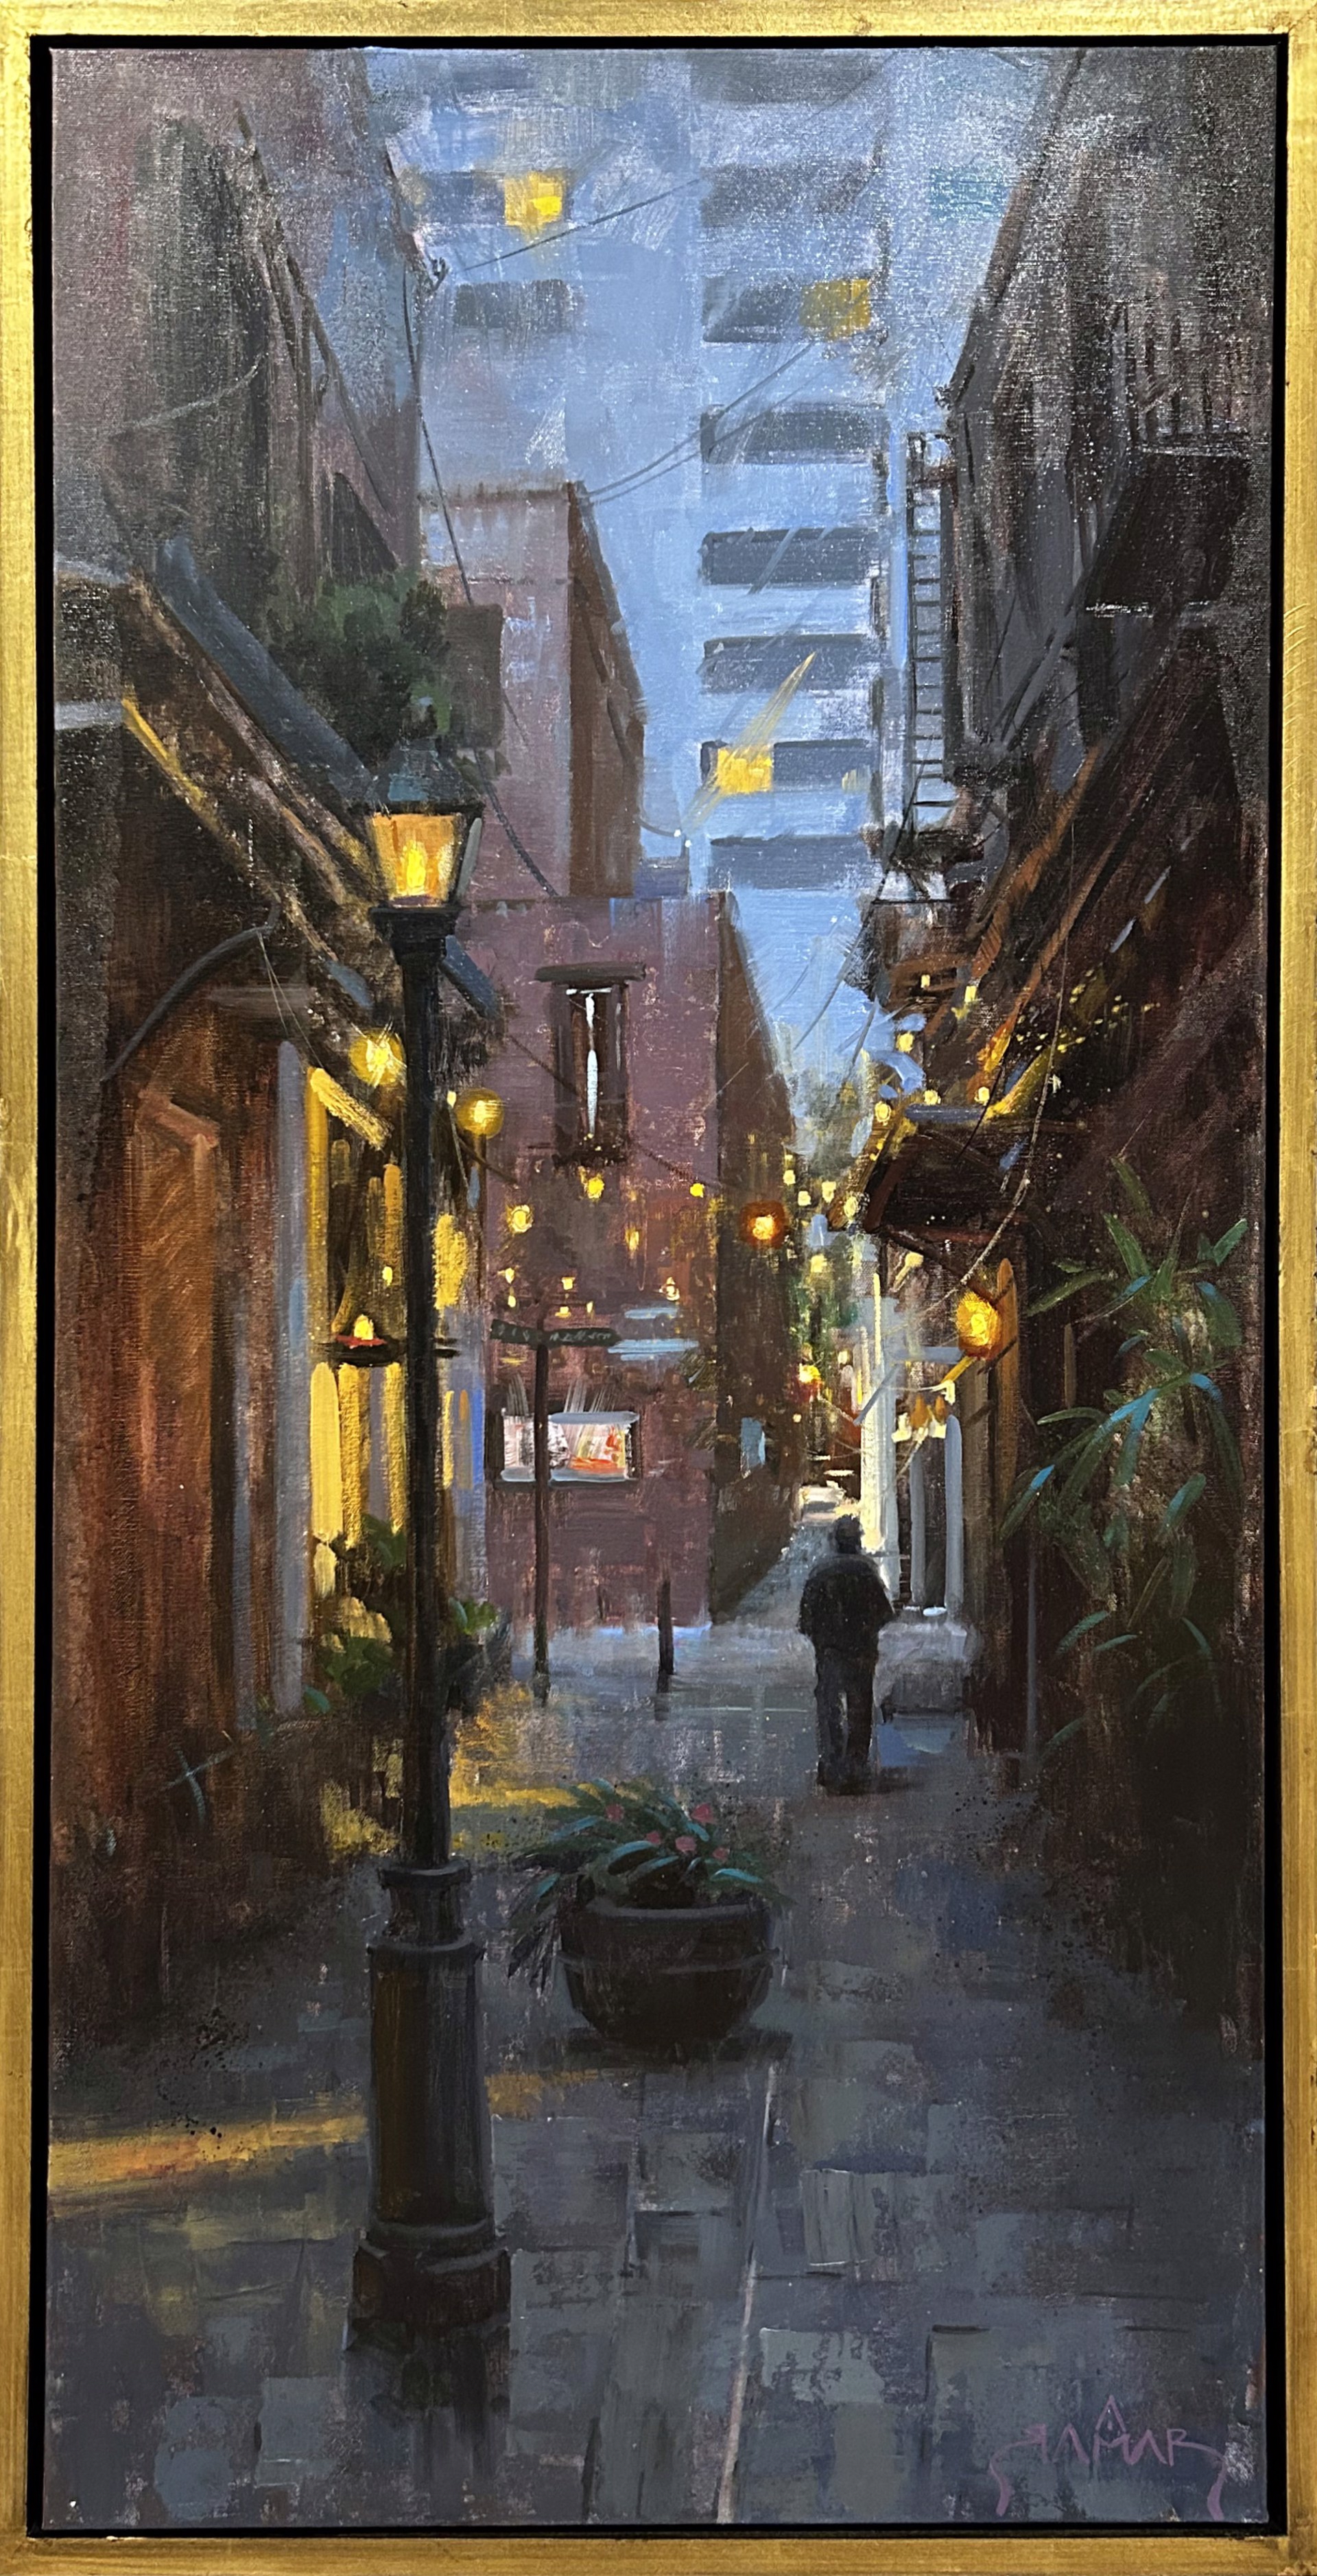 A Secret Alley by Antwan Ramar